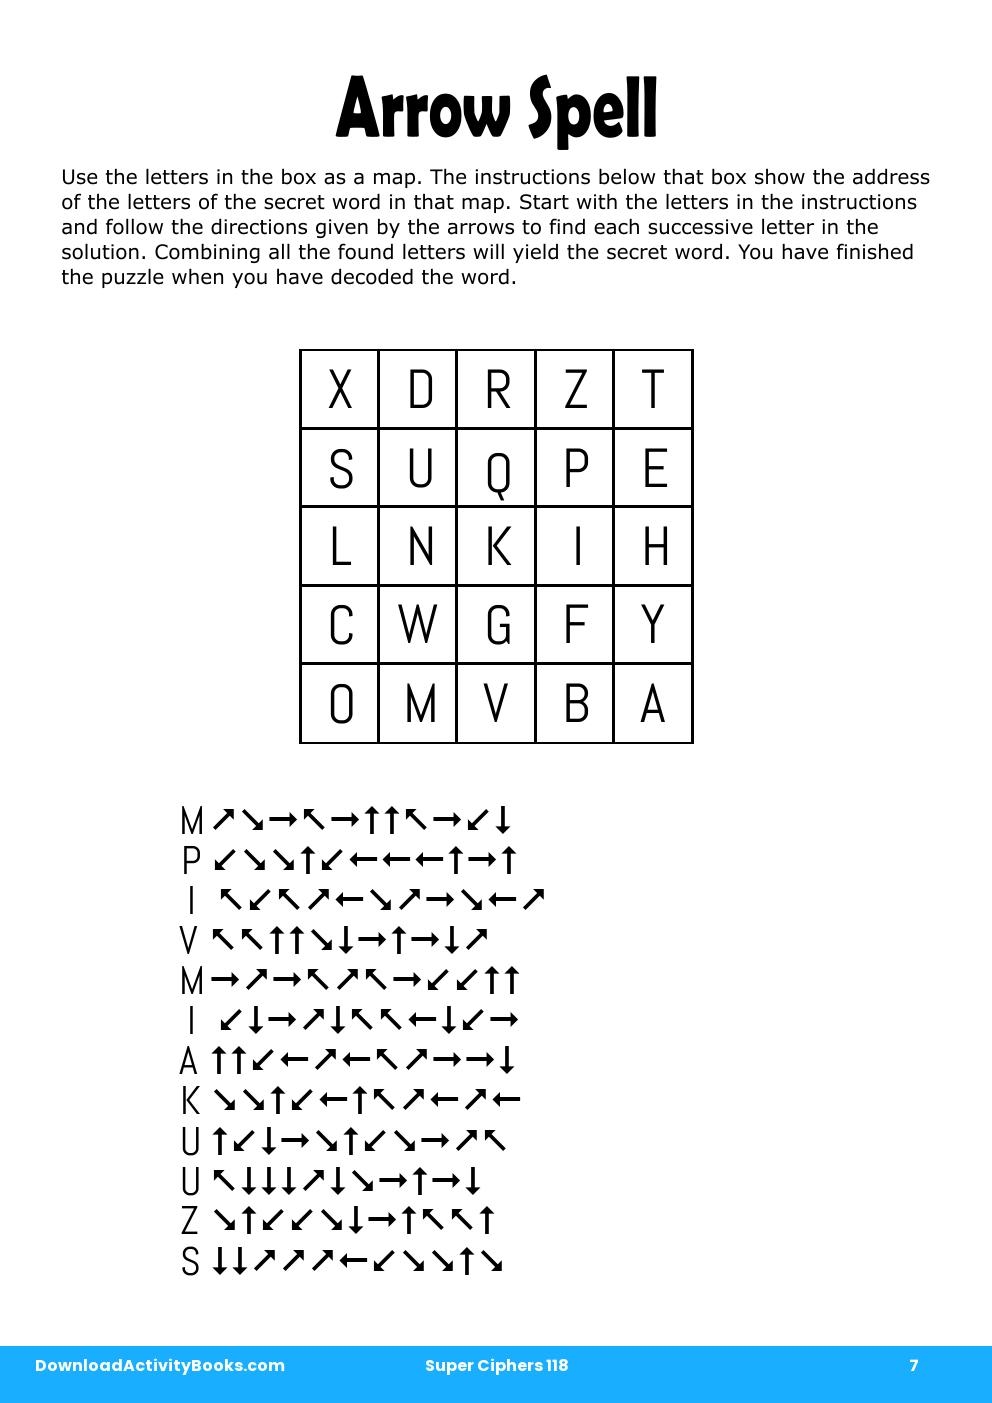 Arrow Spell in Super Ciphers 118